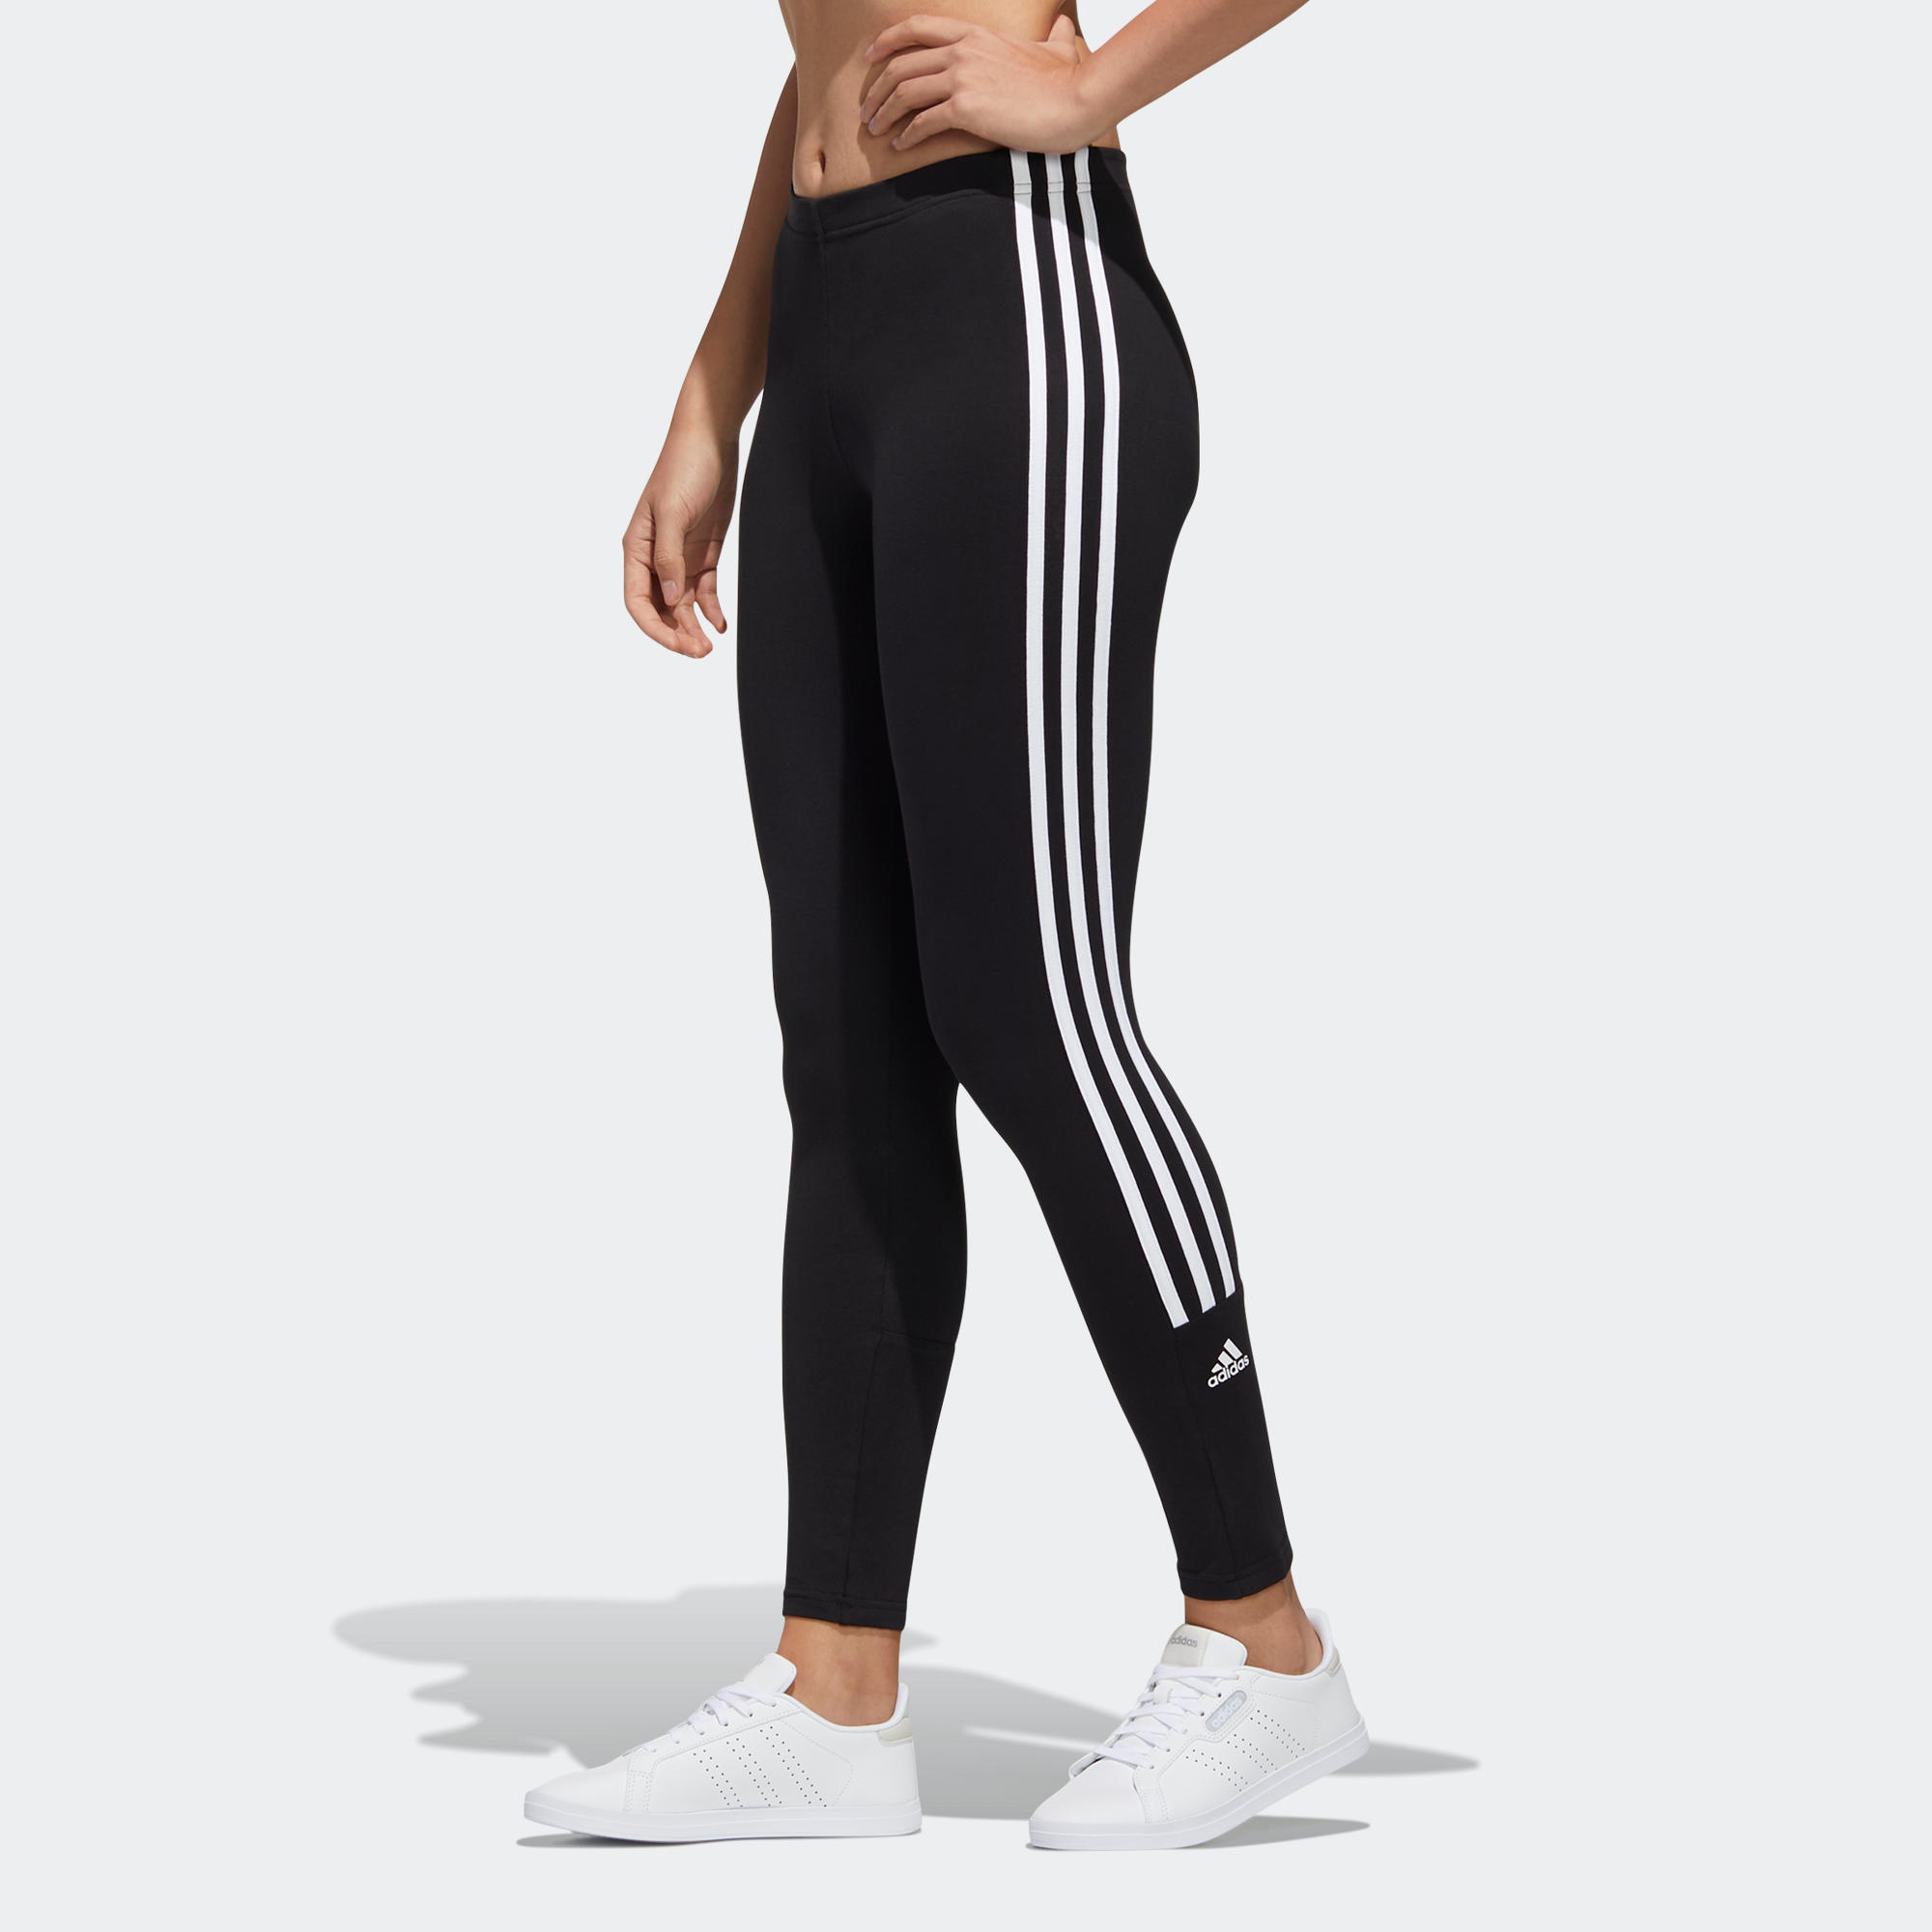 black three stripe leggings by adidas